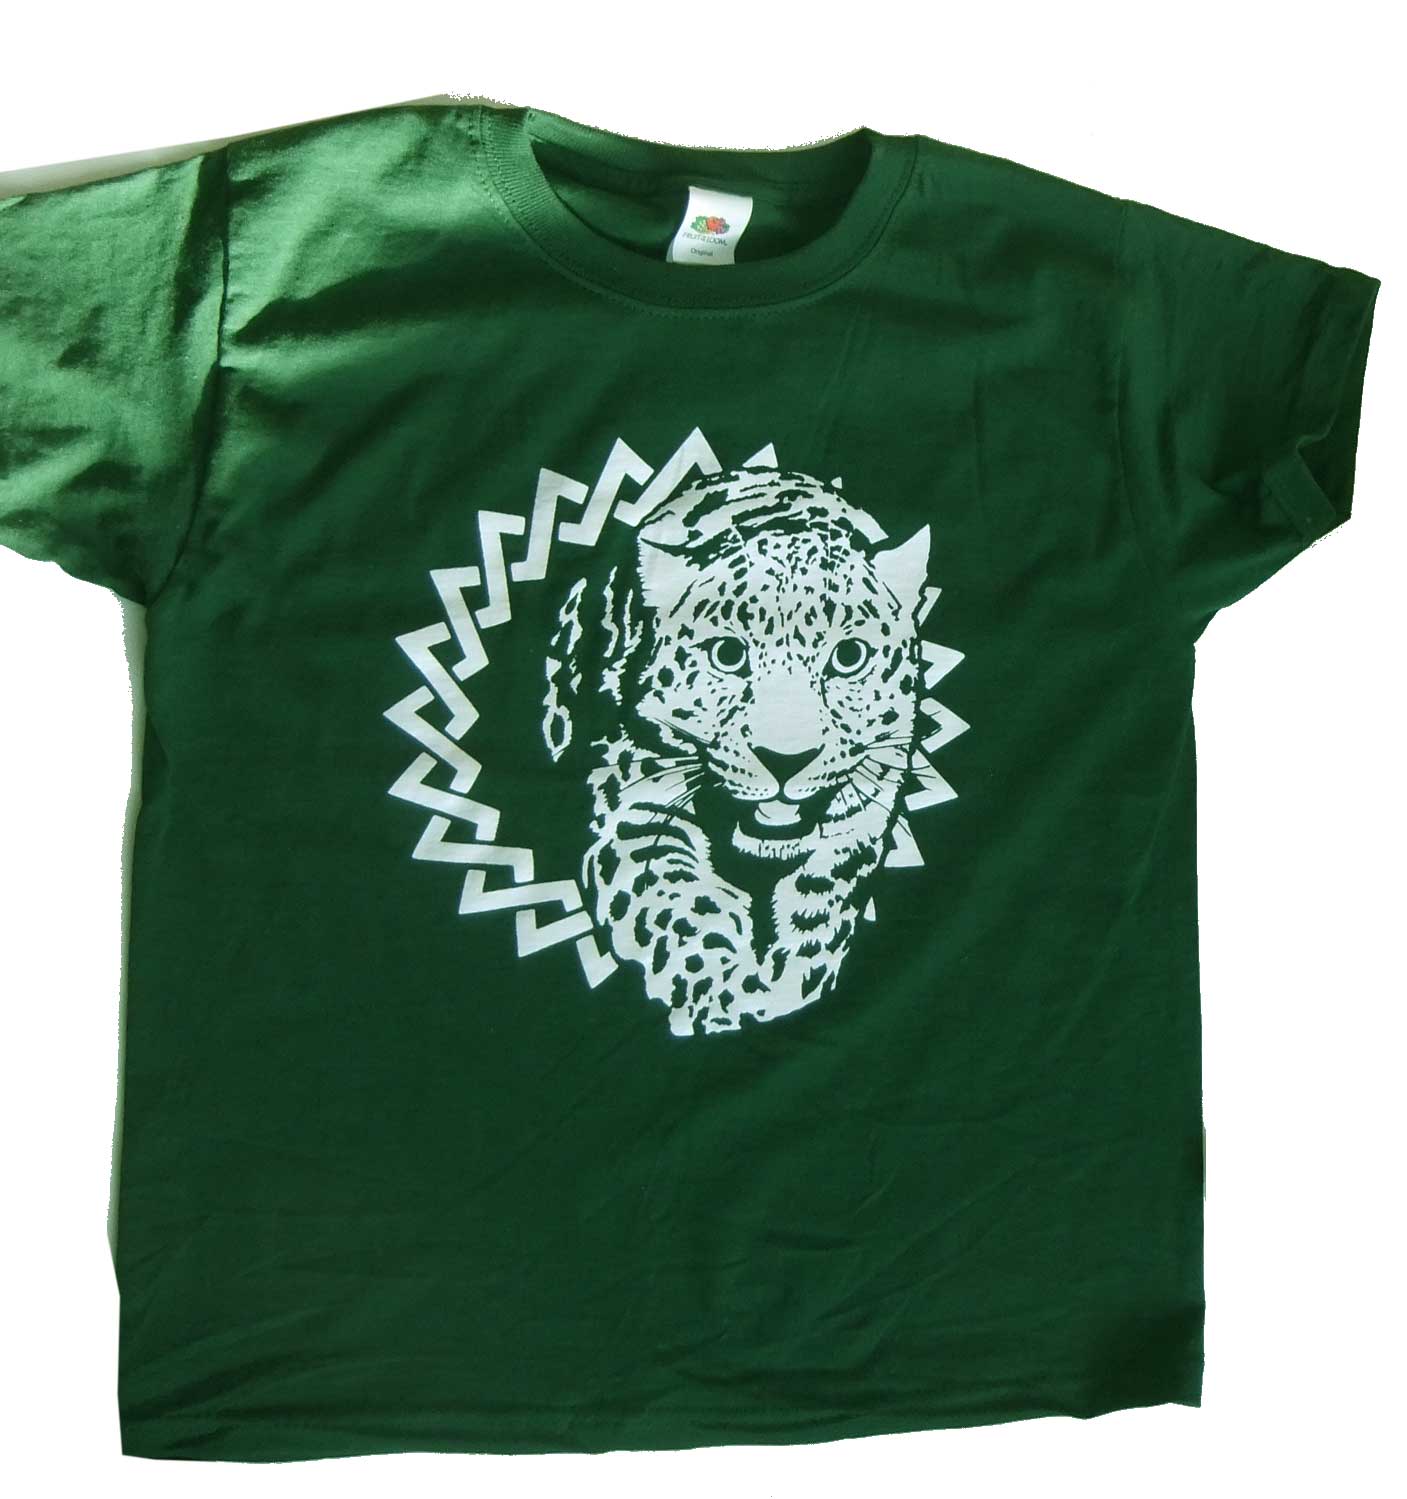 LEOPARD � T-shirt green for children